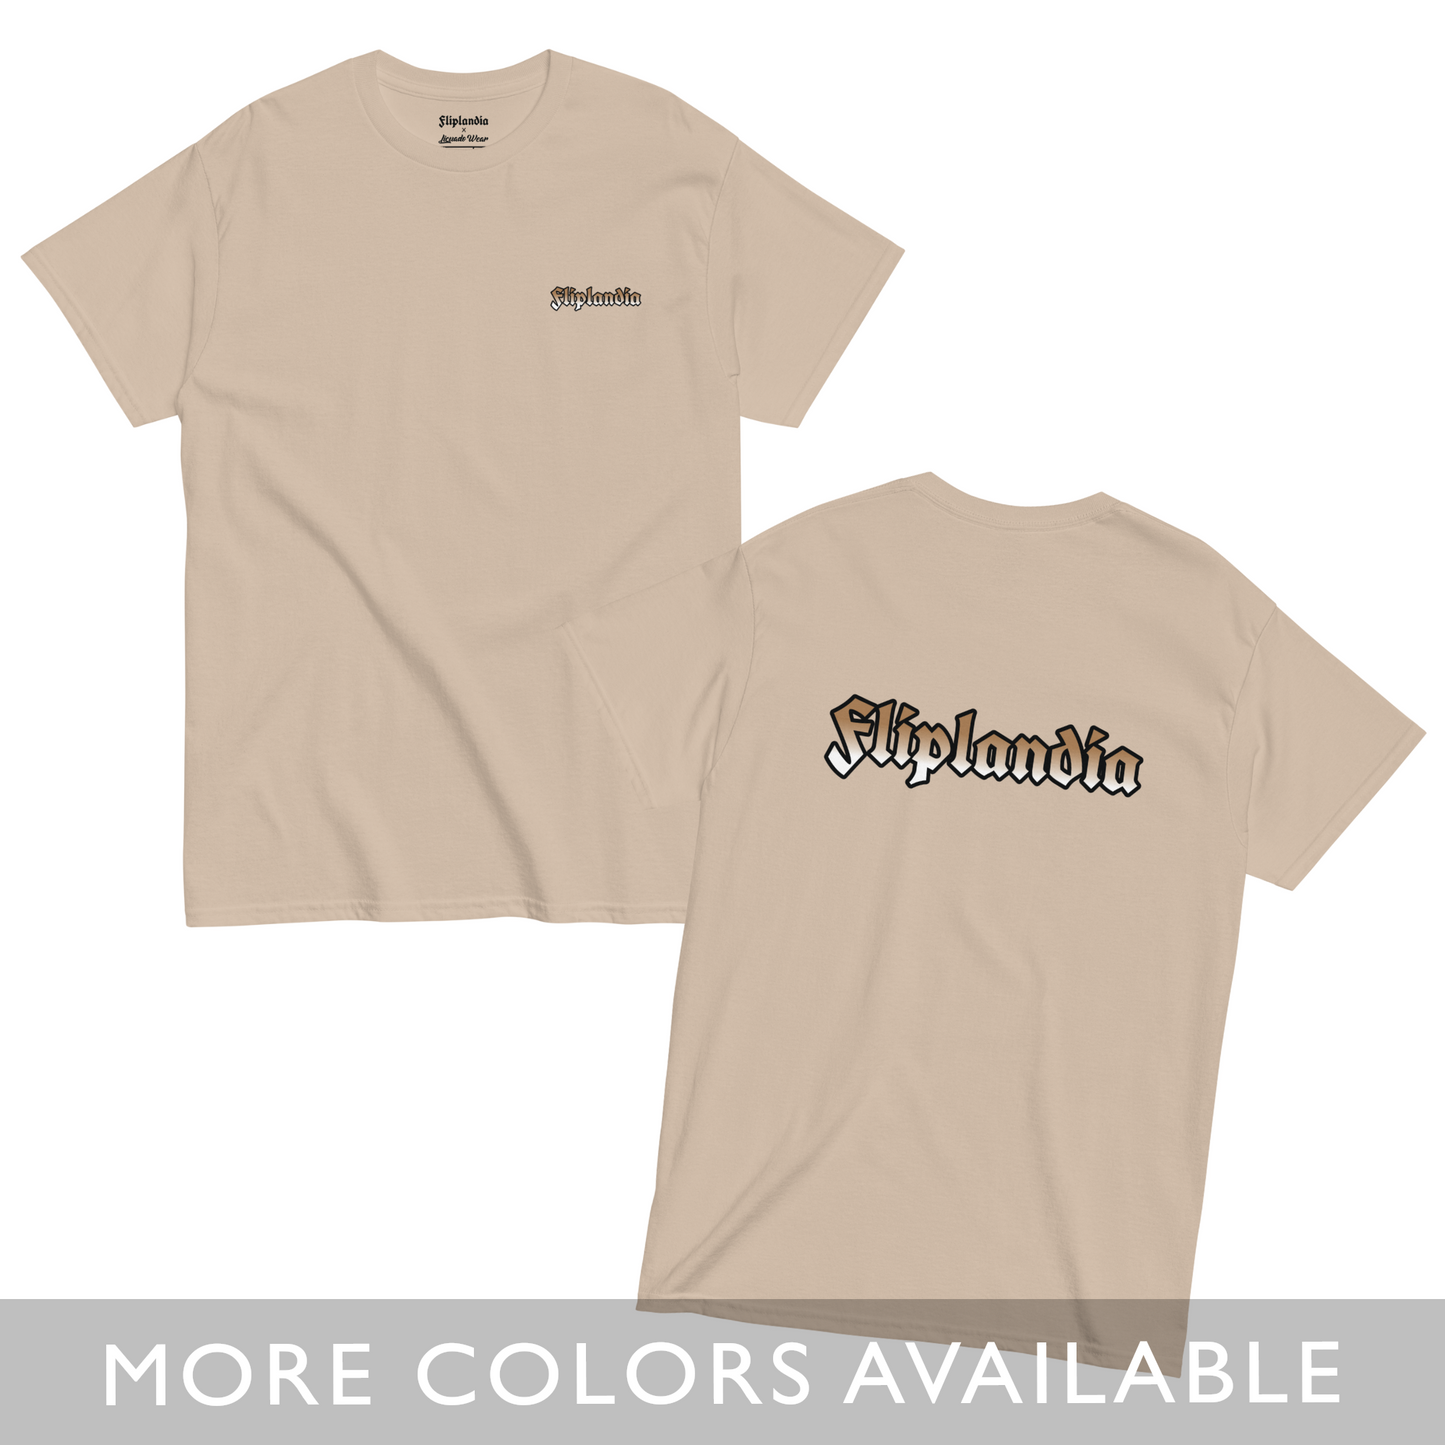 Fliplandia Tan Gradient - Unisex T-shirt